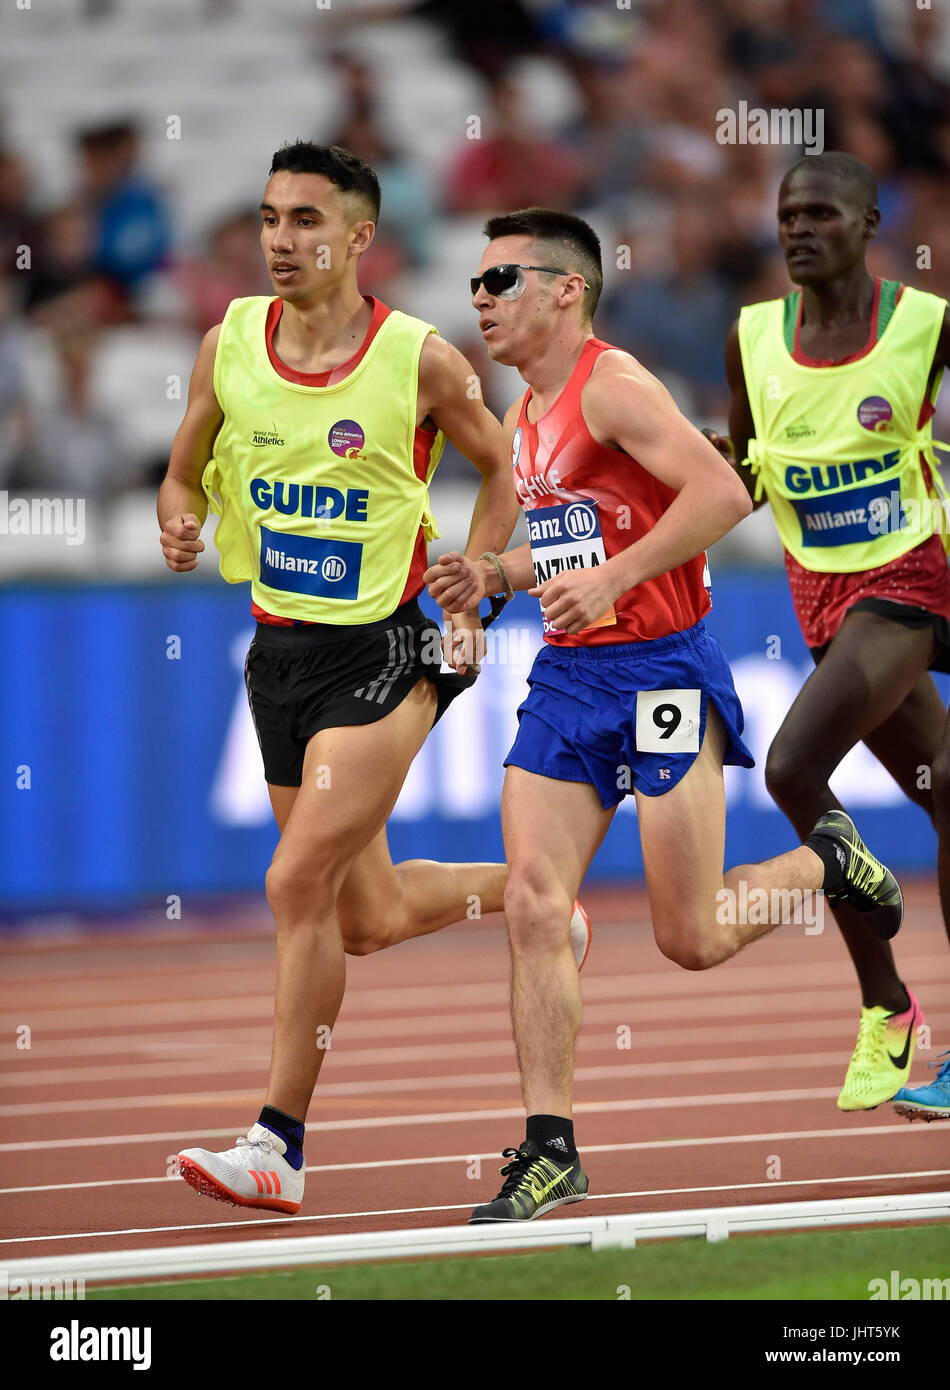 Londra Inghilterra - Luglio 15, 2017: Cristian Valenzuela, guida Fransisco (CHI) durante Uomini 5000m T11 al mondo Para atletica campionati, Londra 2017, sabato. Foto : Taka G Wu Foto Stock